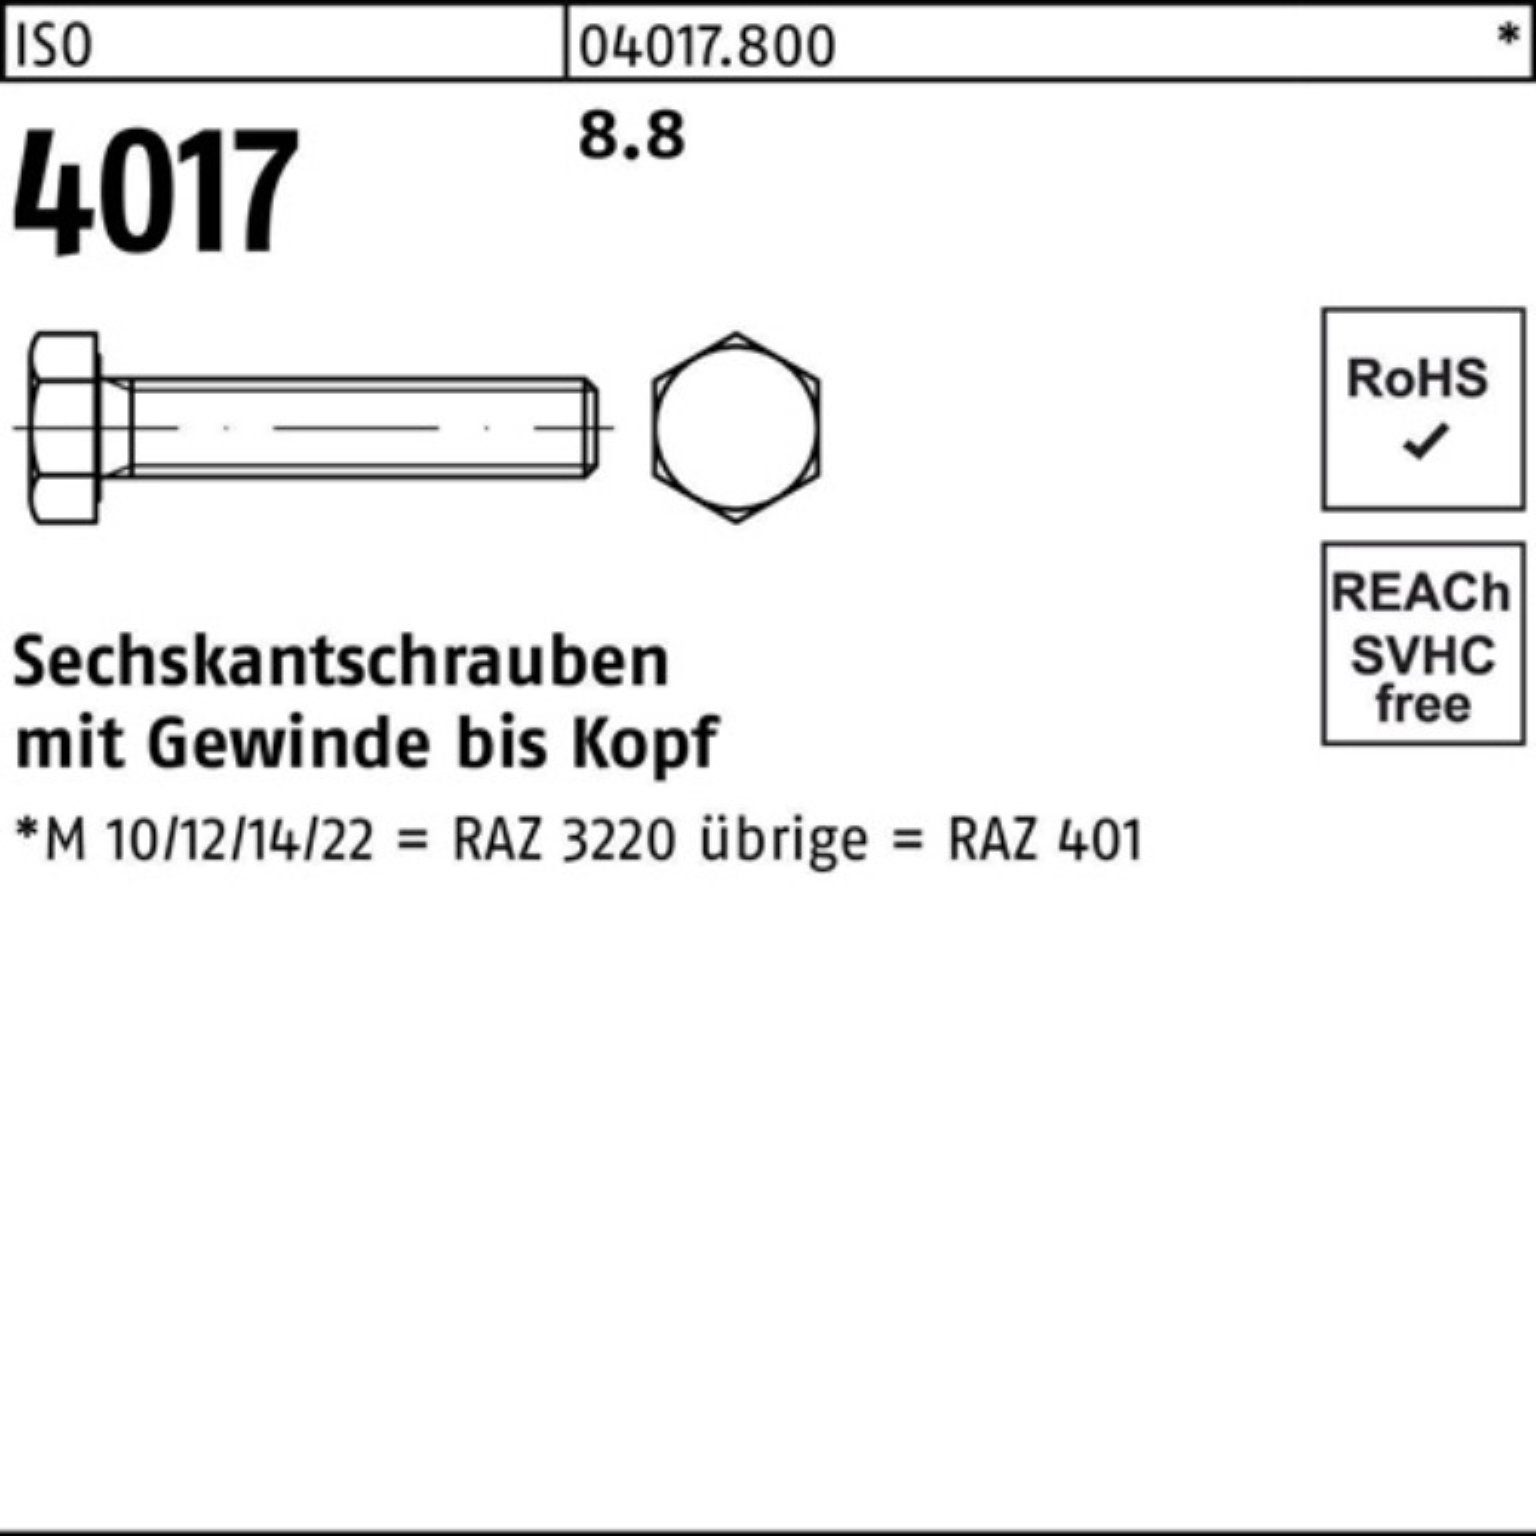 4017 Bufab ISO Sechskantschraube 8.8 ISO VG 40 50 Pack 100er Stück 150 M10x Sechskantschraube